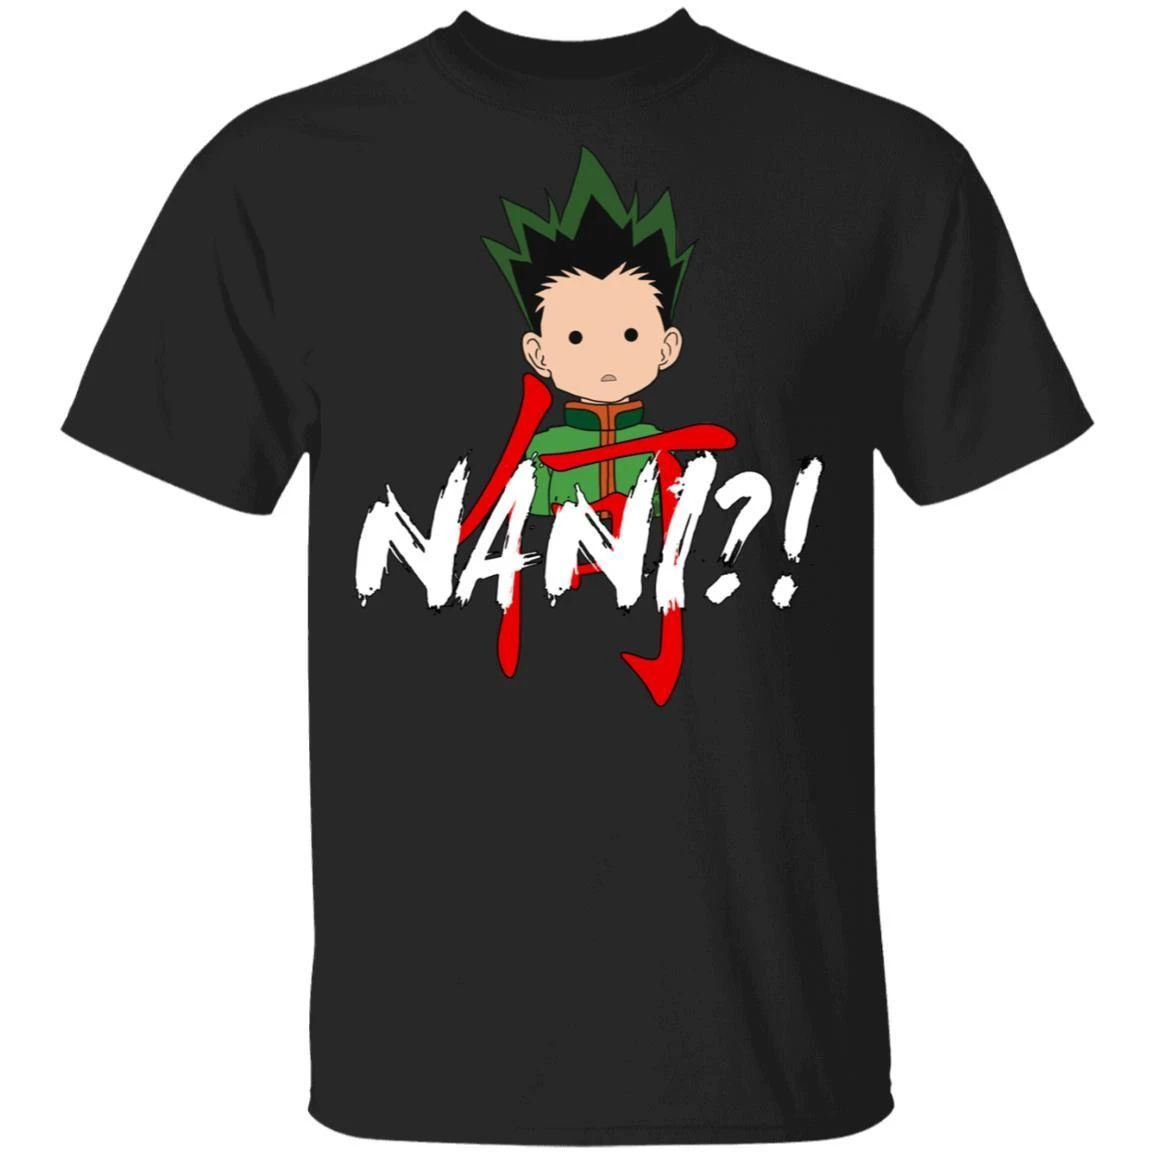 Hunter X Hunter Gon Freecss Nani Shirt Funny Anime Character Tee